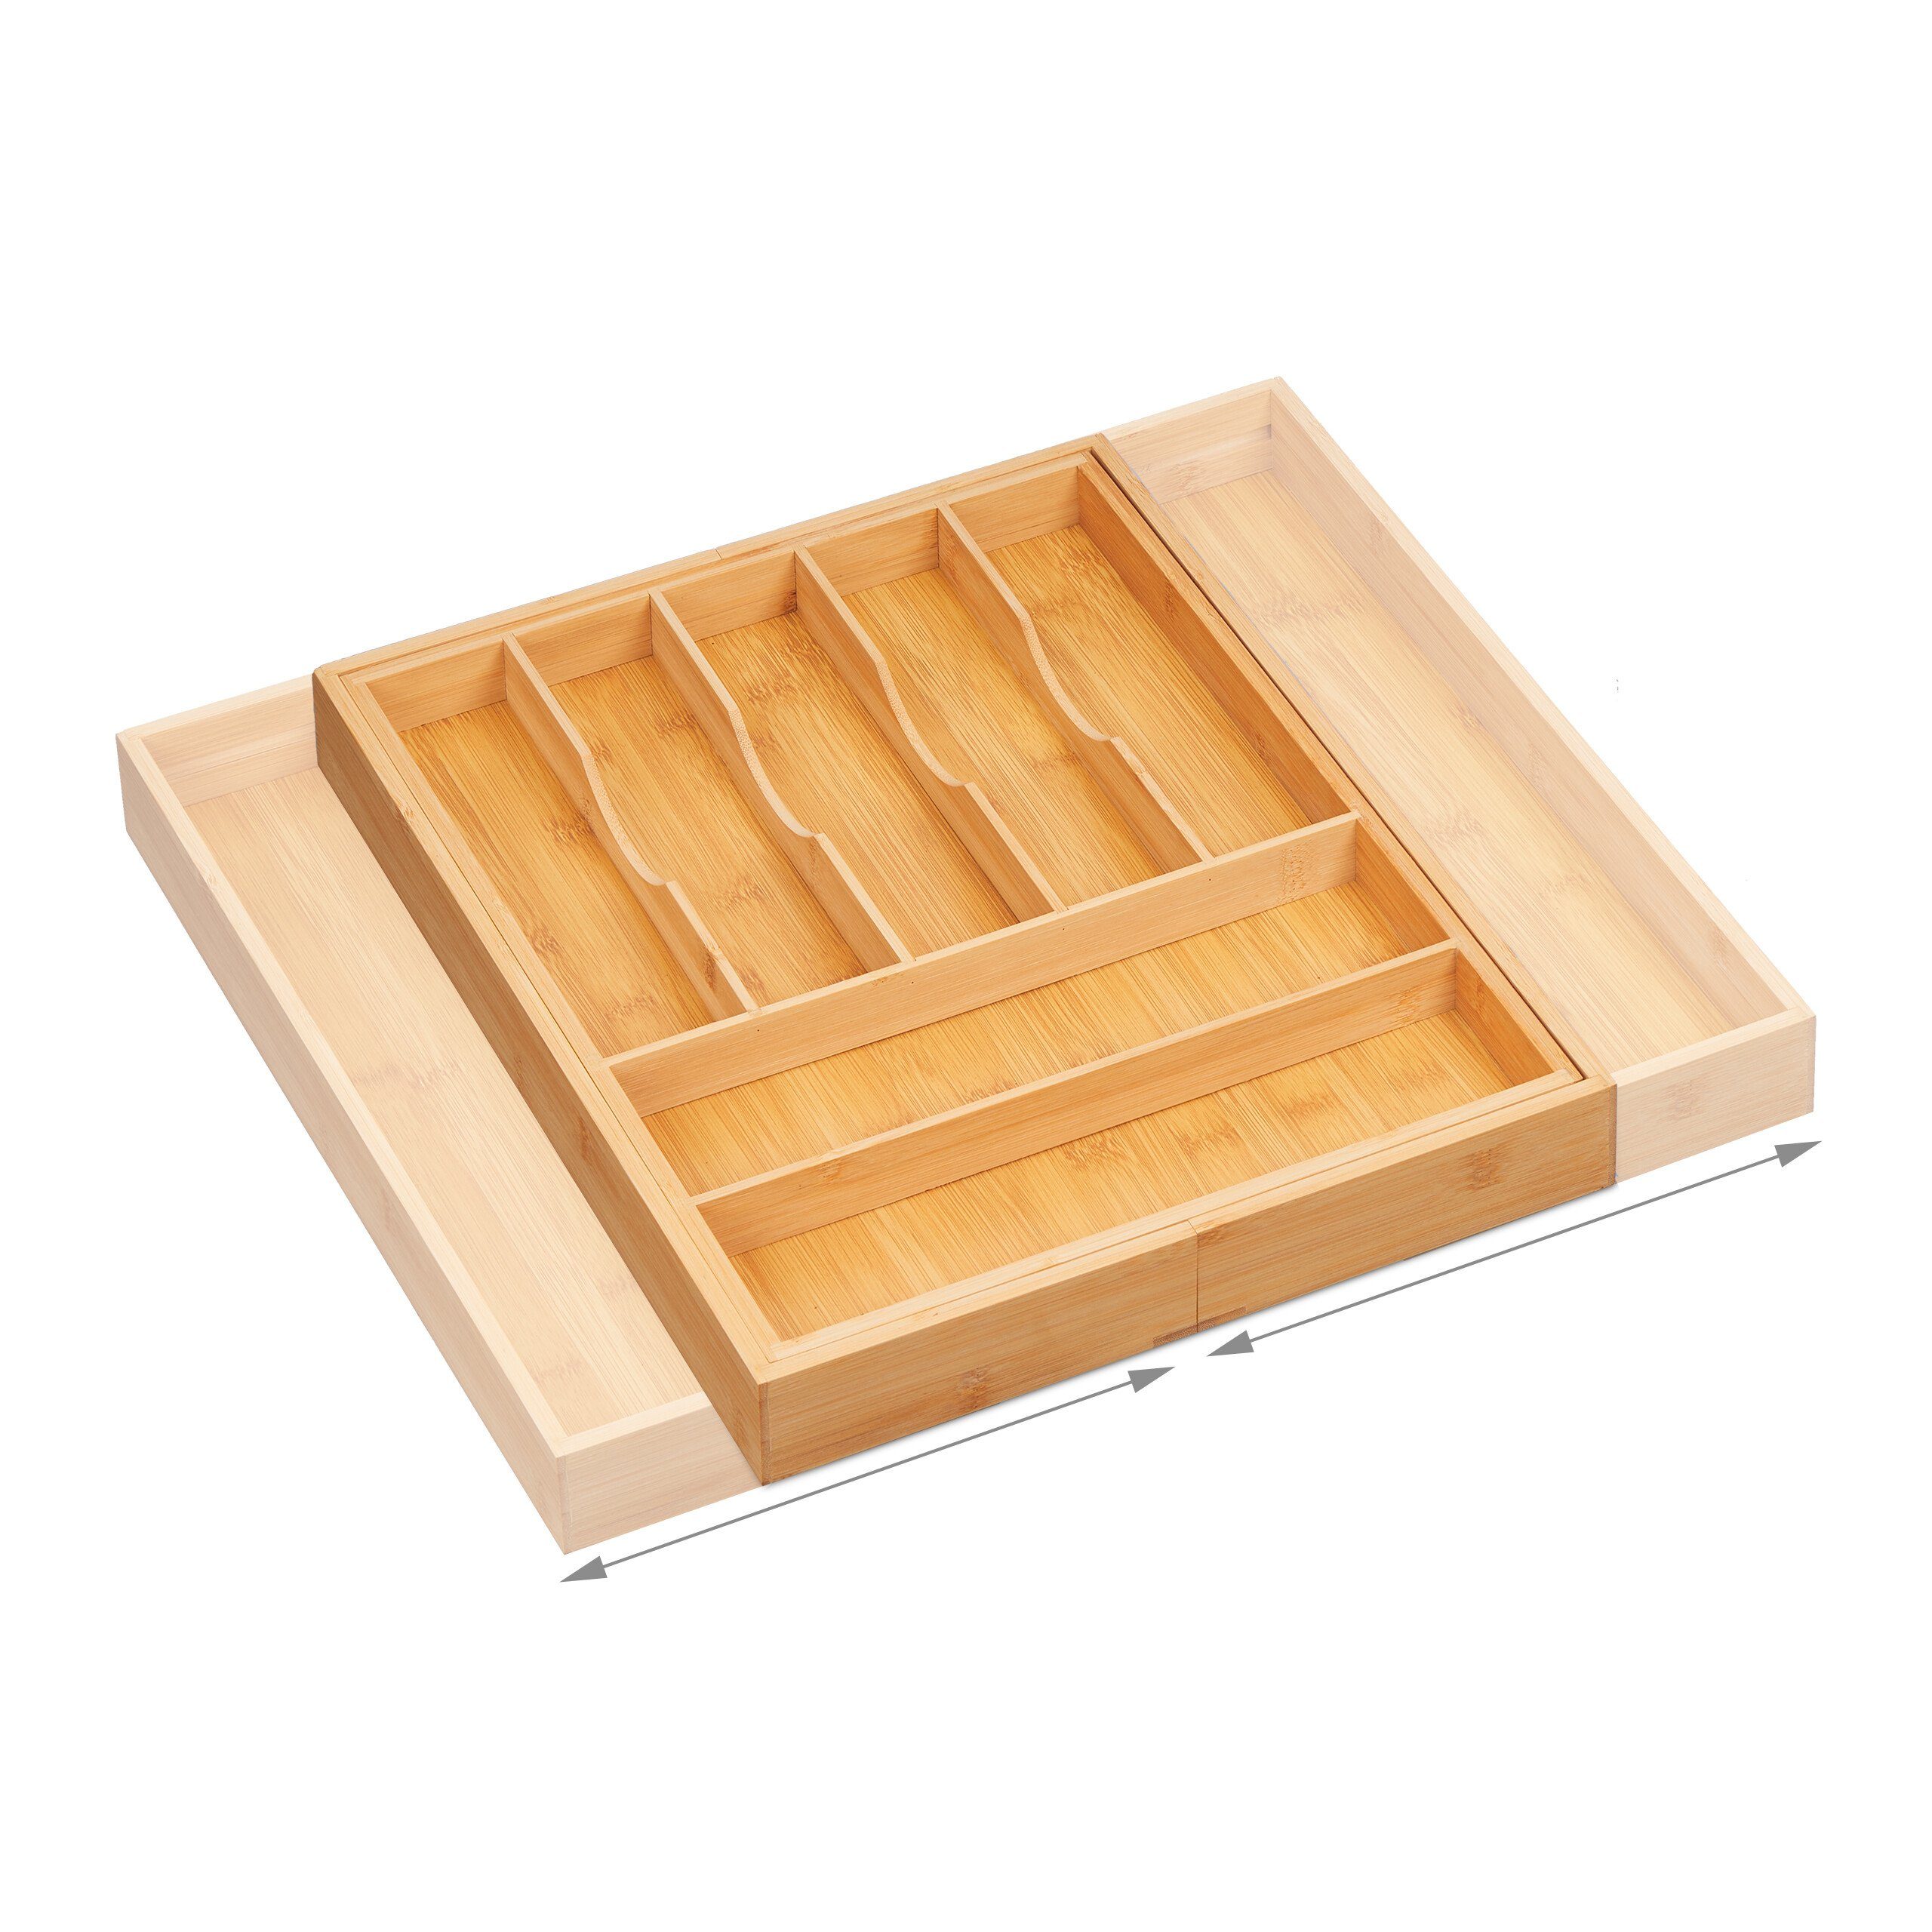 aus relaxdays Bambus Besteckkasten Ausziehbarer Besteckkasten